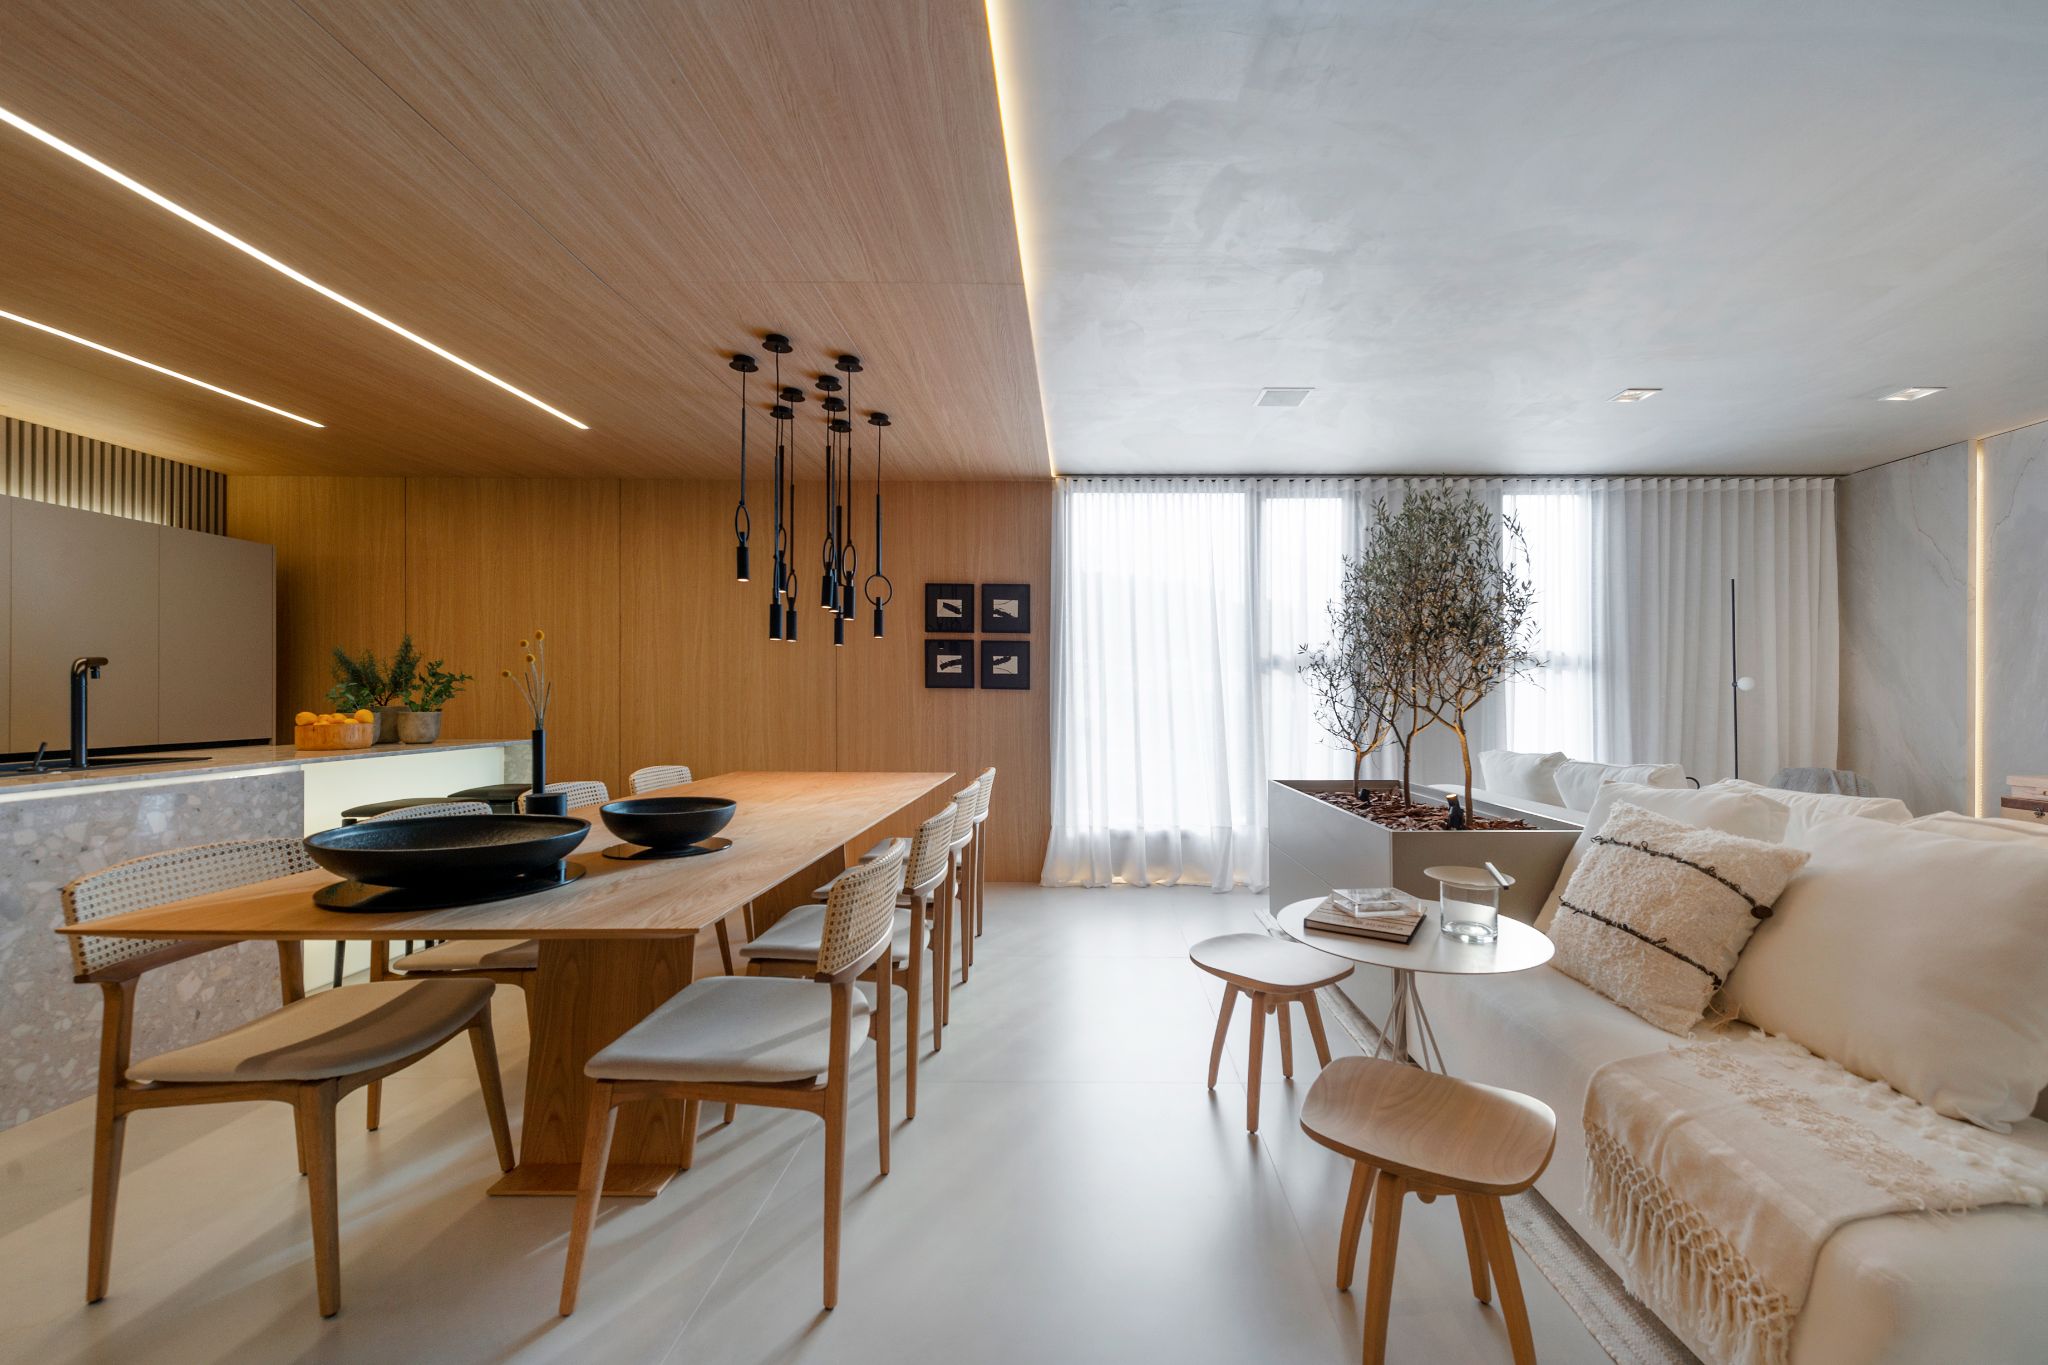 Sala integrado a cozinha com piso de madeira, mesa de jantar de madeira, cadeiras de madeira com estofado cinza, parte da cozinha com parede e teto revestido de madeira